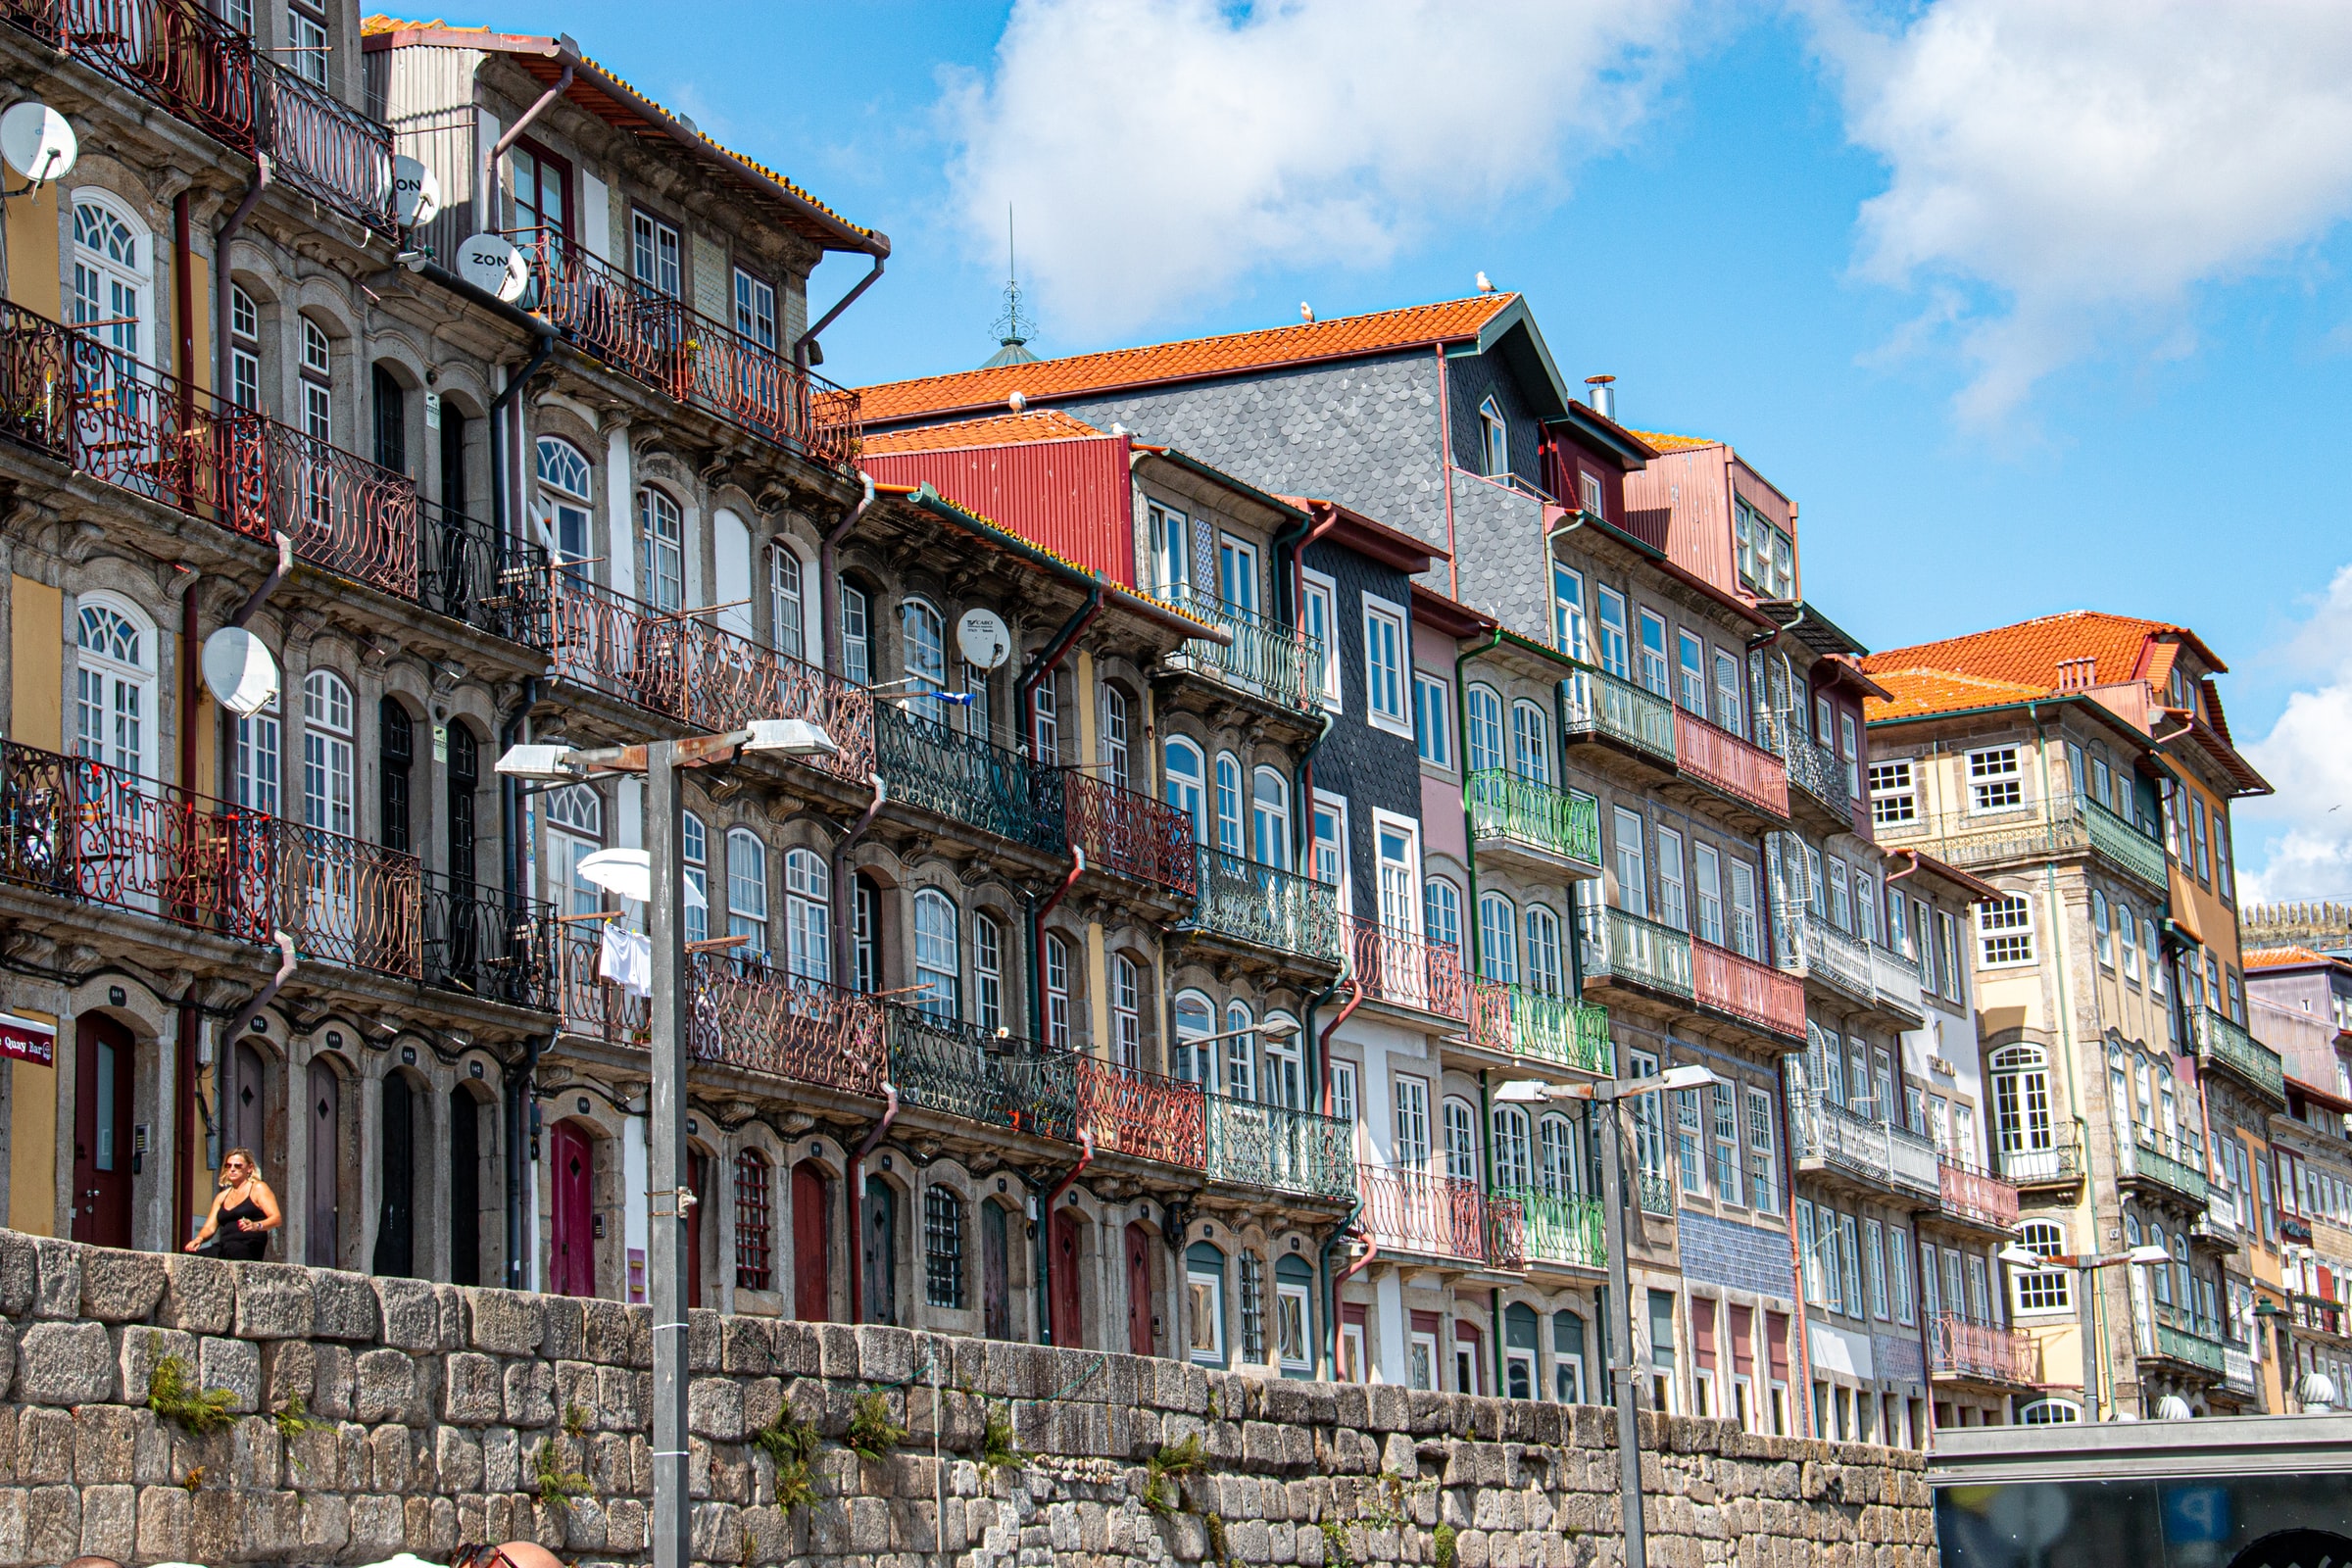 Ribeira, Porto